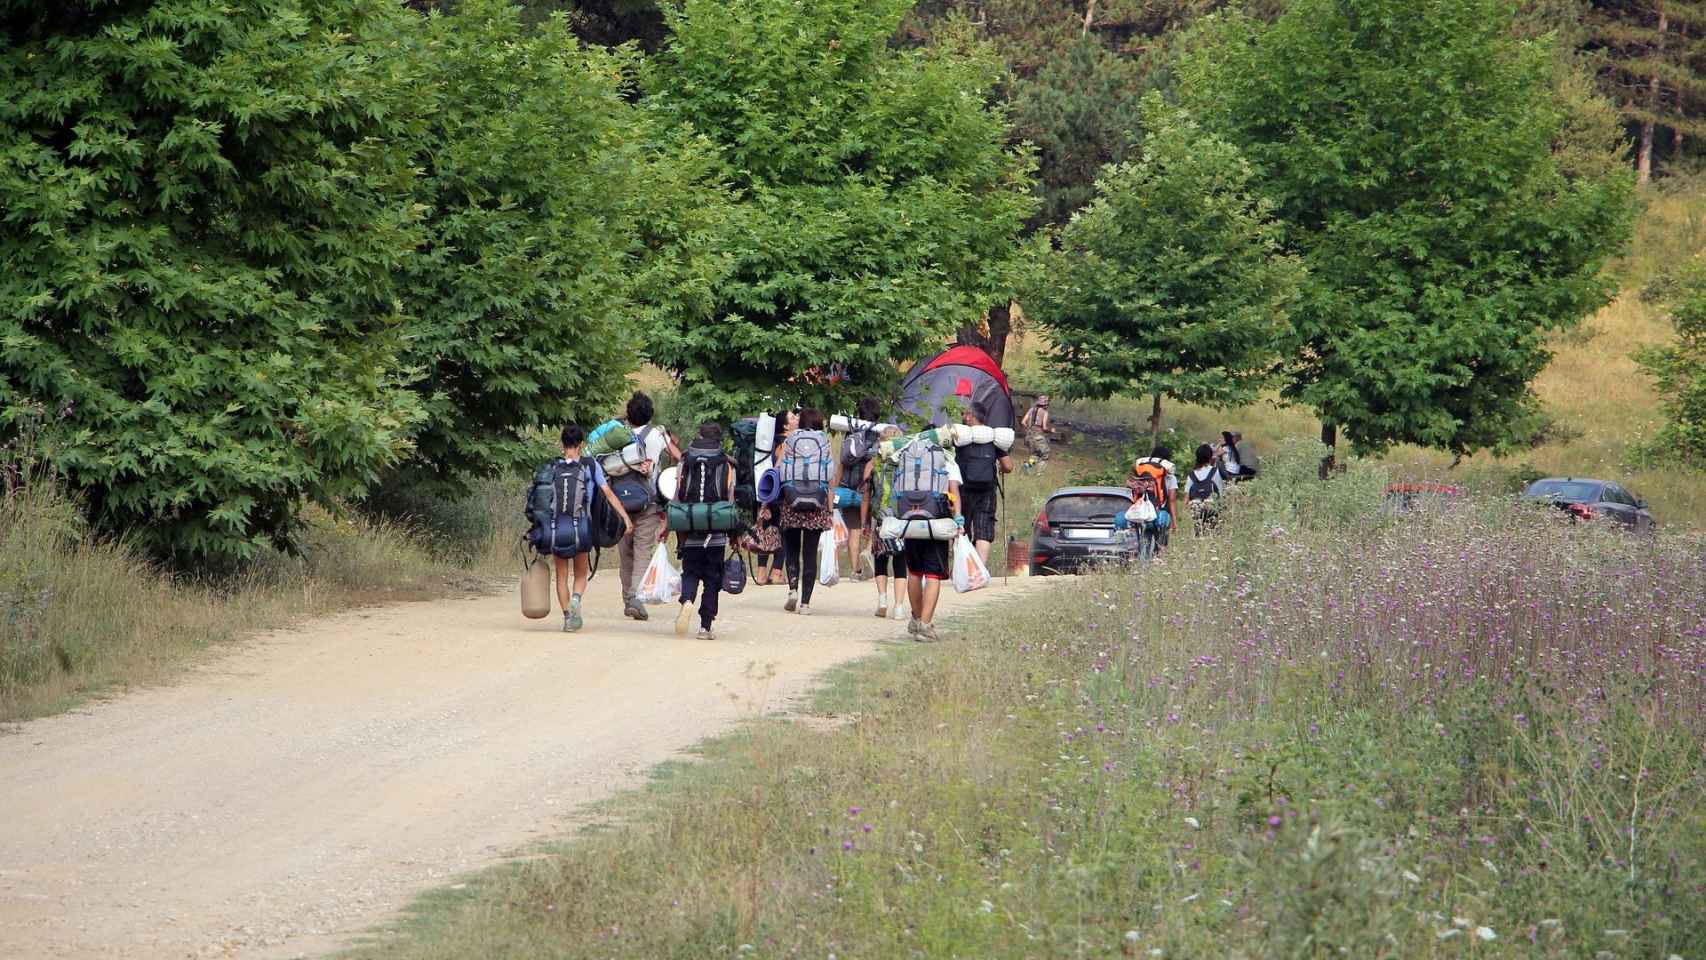 Miembros de un campamento de verano abandonan la zona equipados con sus pertenencias / CG